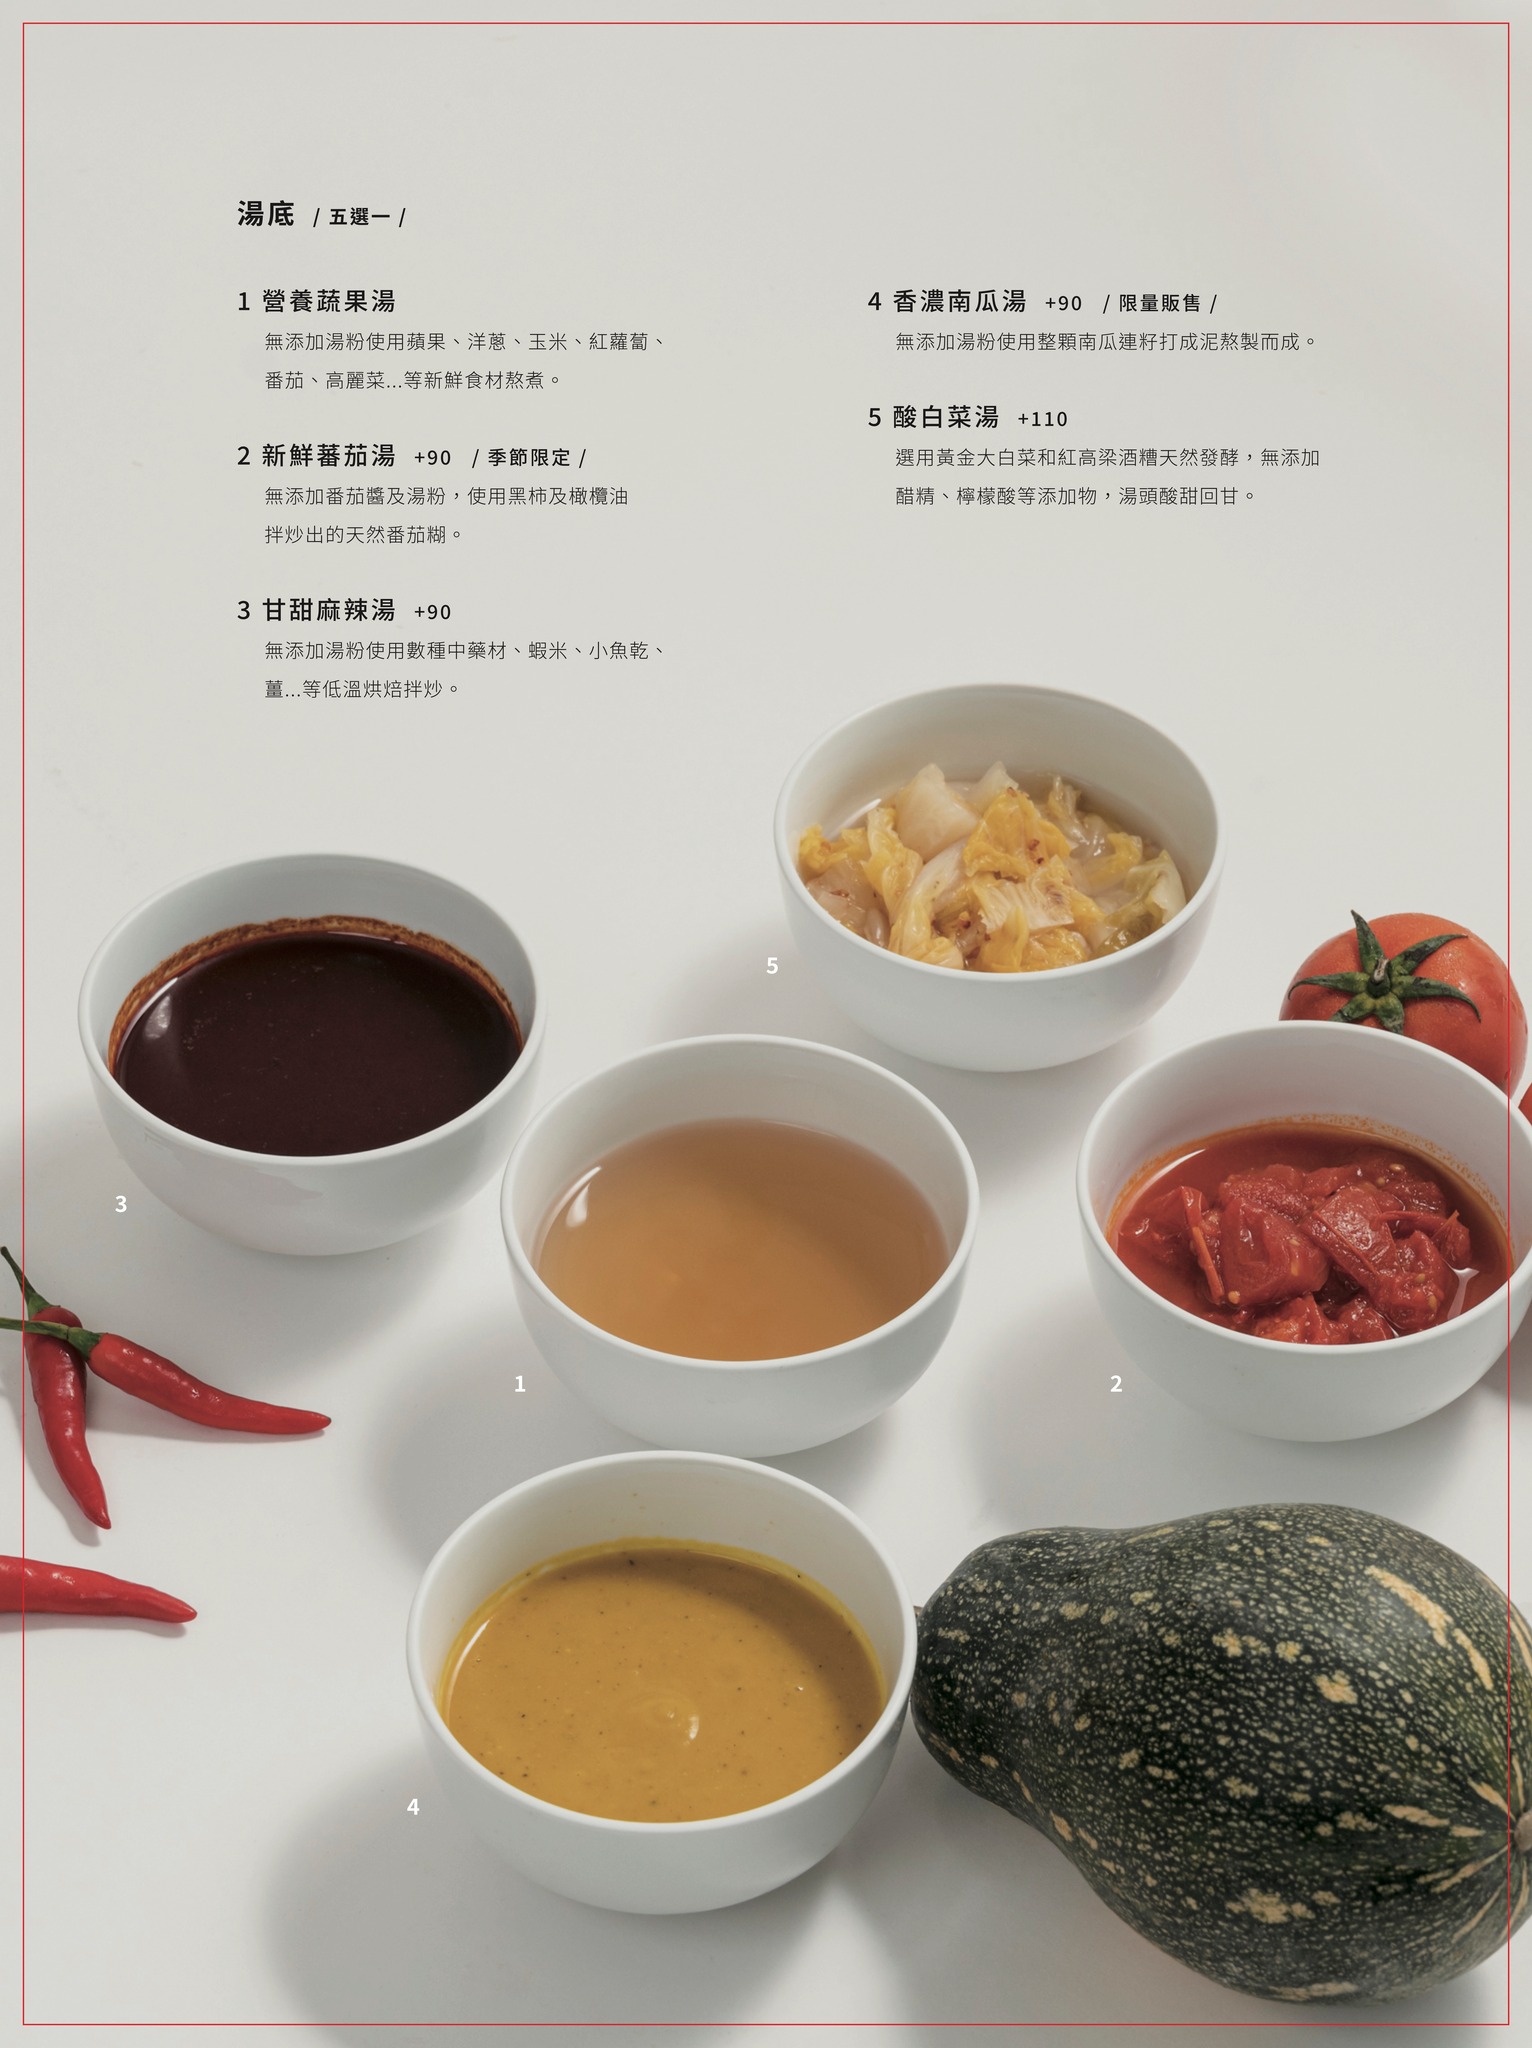 【桃園】樸食鍋物 PU SHI︱超人氣青埔火鍋推薦，鄰近橫山